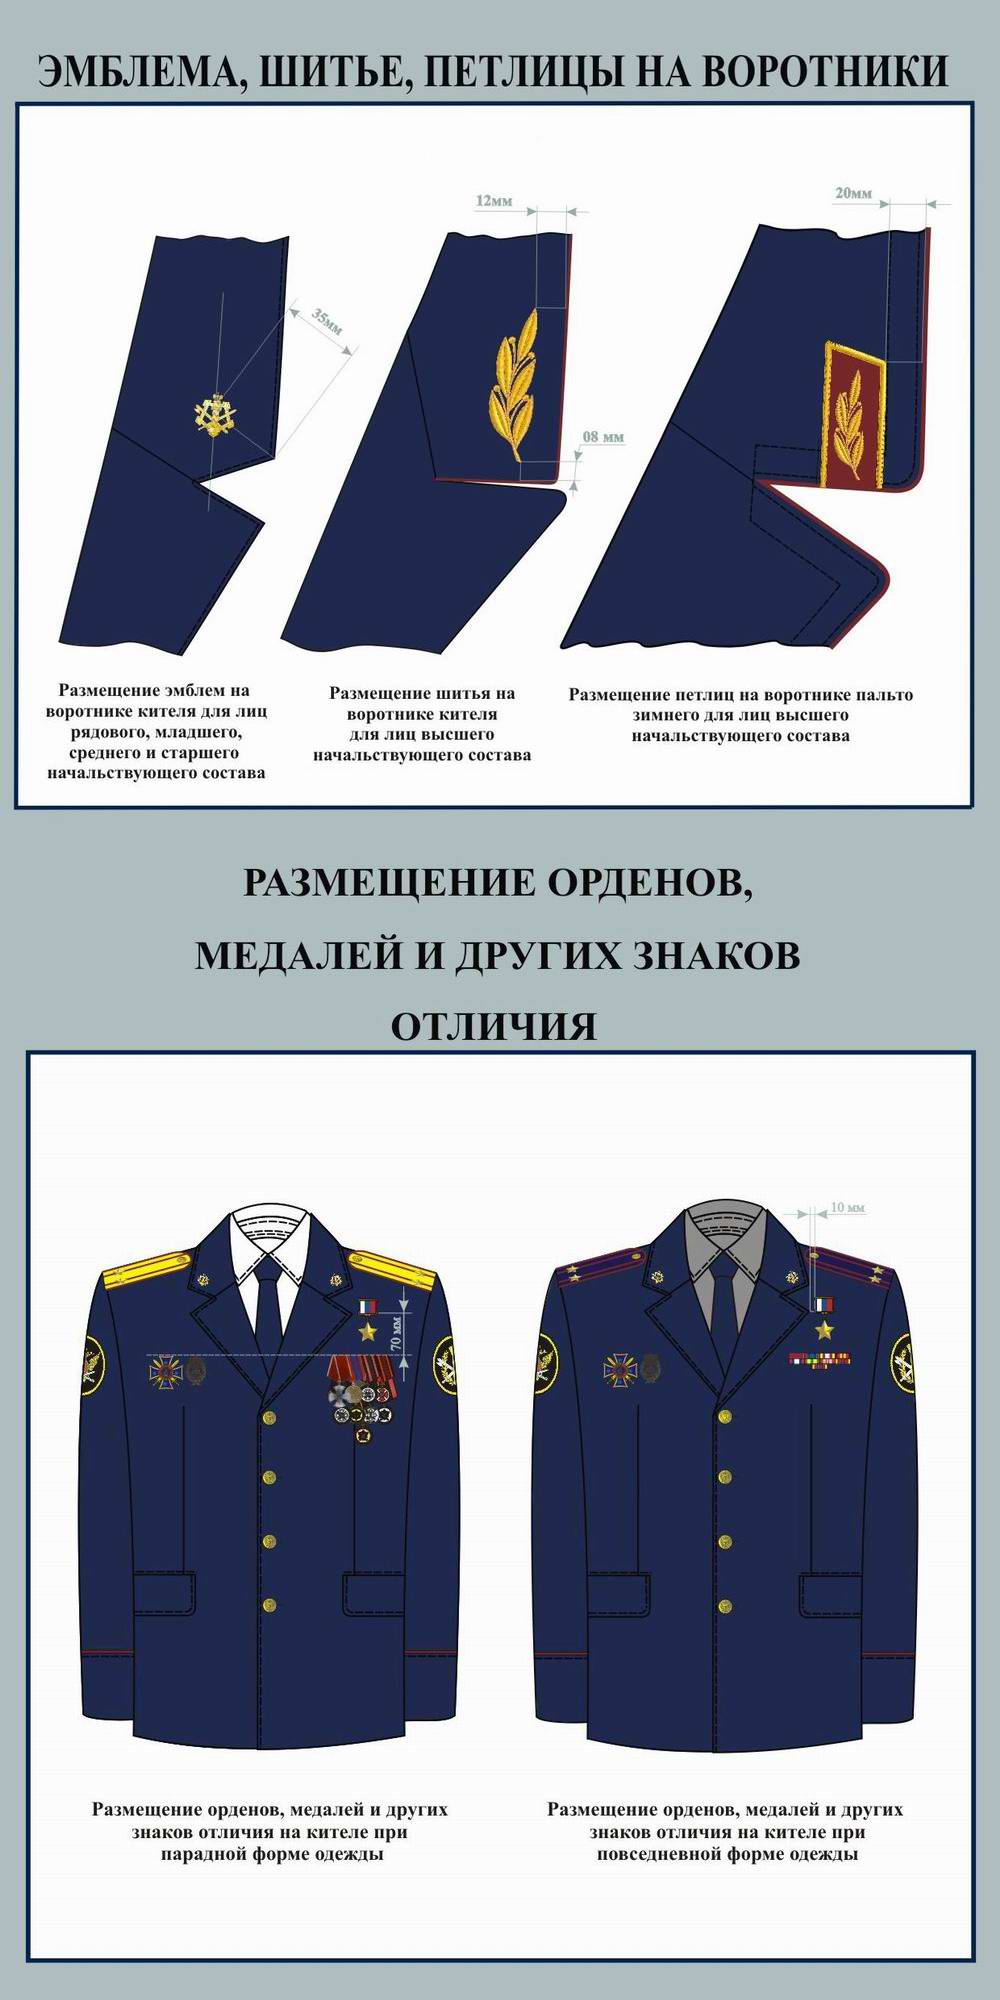 Размещение эмблем, петлиц, орденов, медалей и других знаков отличия на форме сотрудников ФСИН